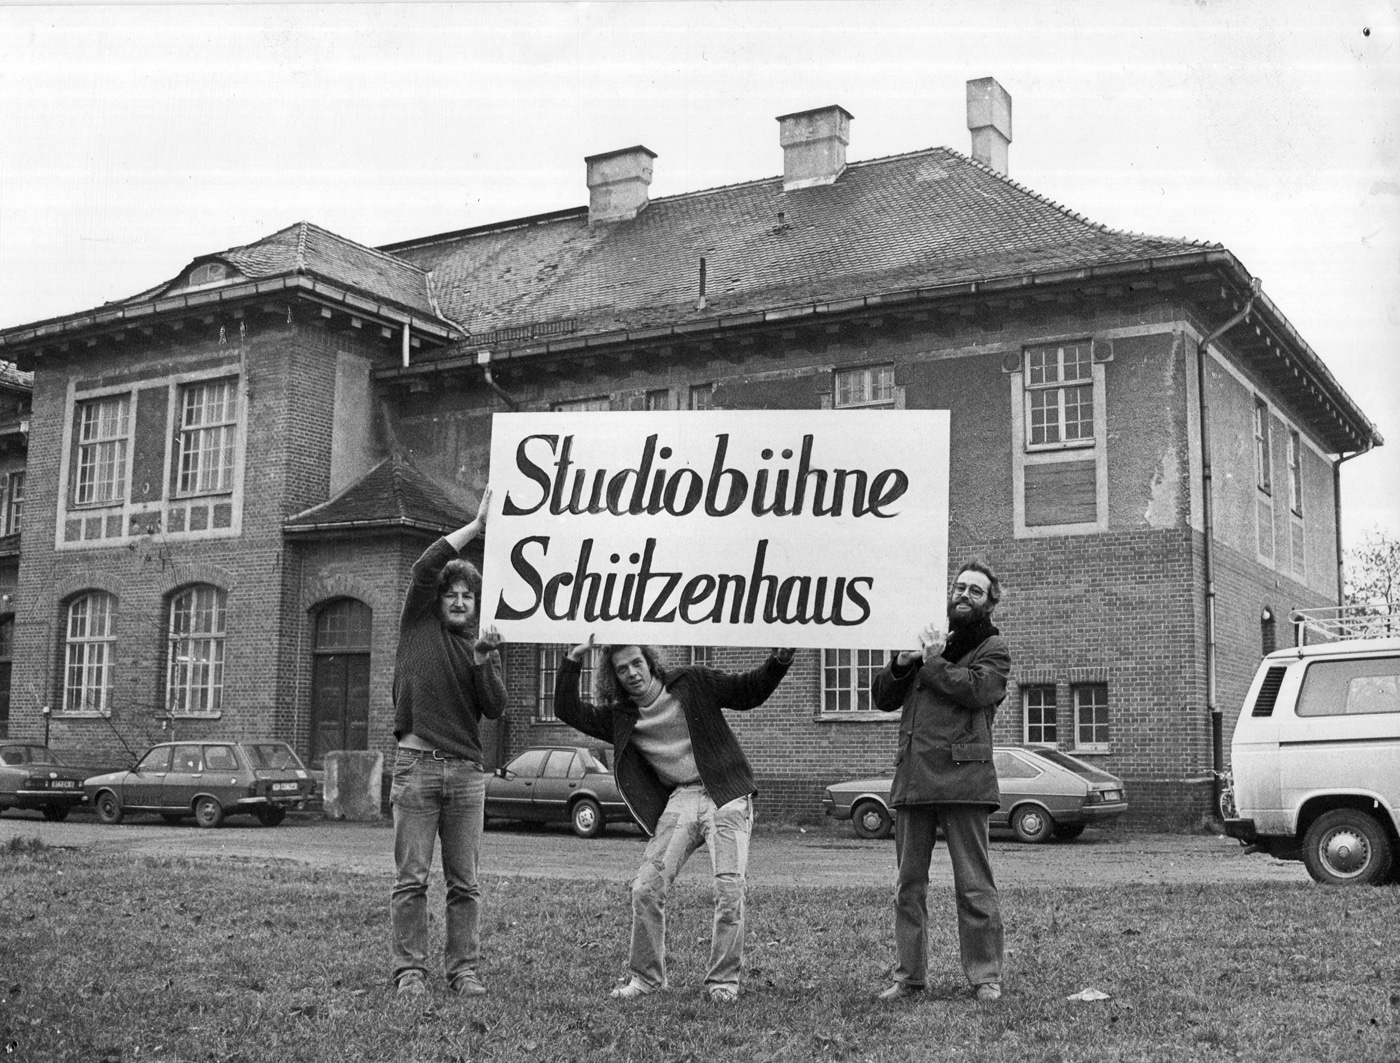 DRei junge Männer halten ein Schild hoch, auf dem "Studiobühne Schützenhaus" steht.